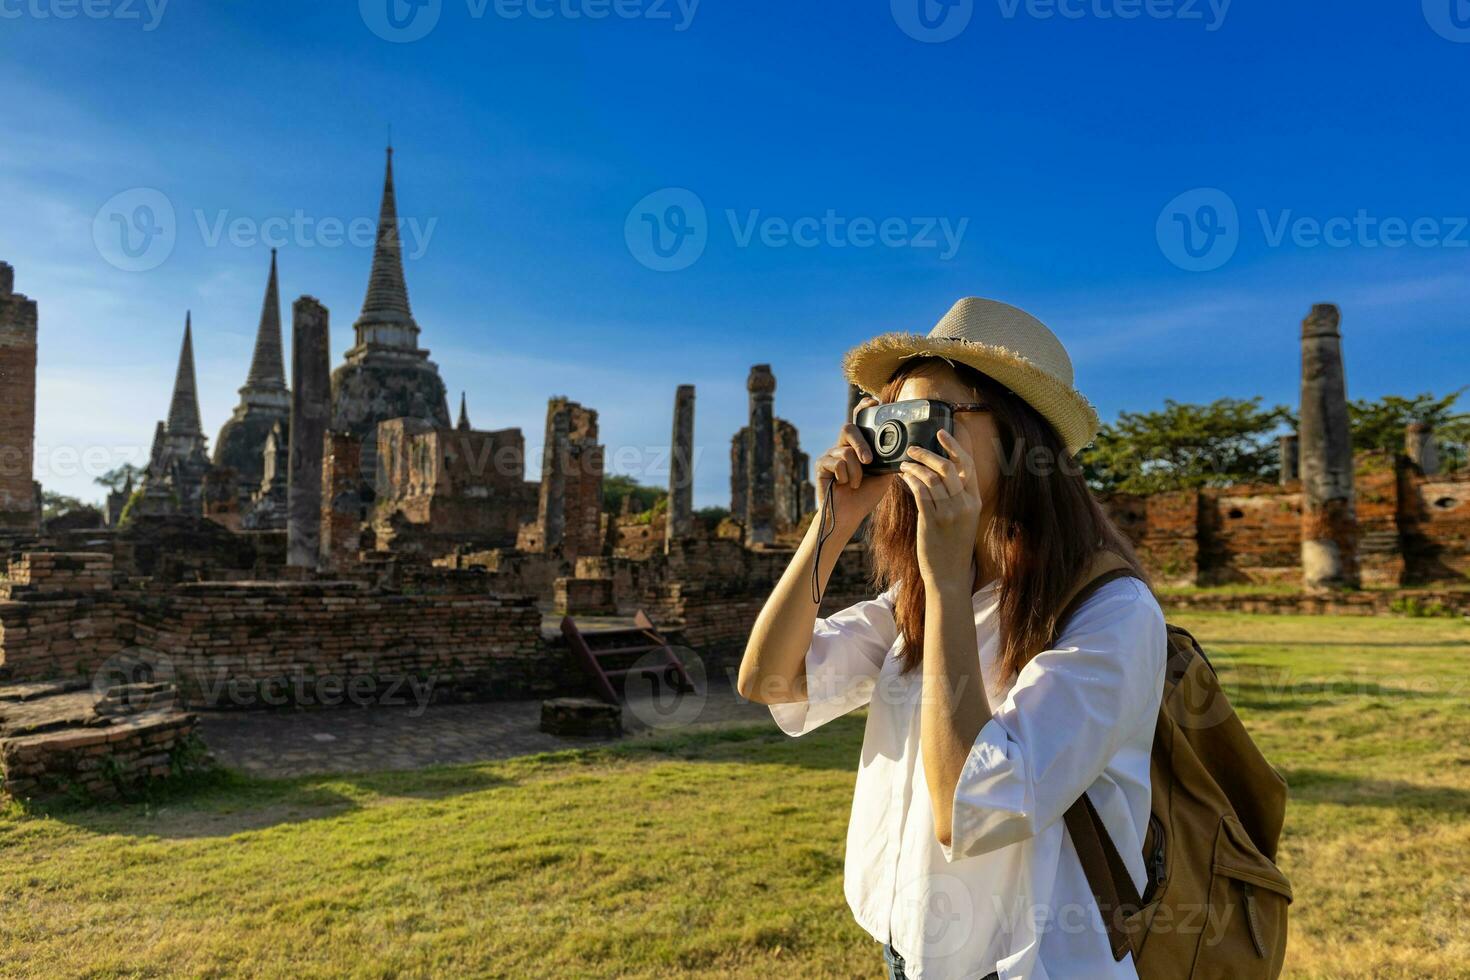 Frau Tourist Kommen Sie zu Besuch wat phra si sanphet Tempel und nehmen Foto, Ayutthaya Thailand zum reisen, Urlaub, Urlaub und Tourismus foto